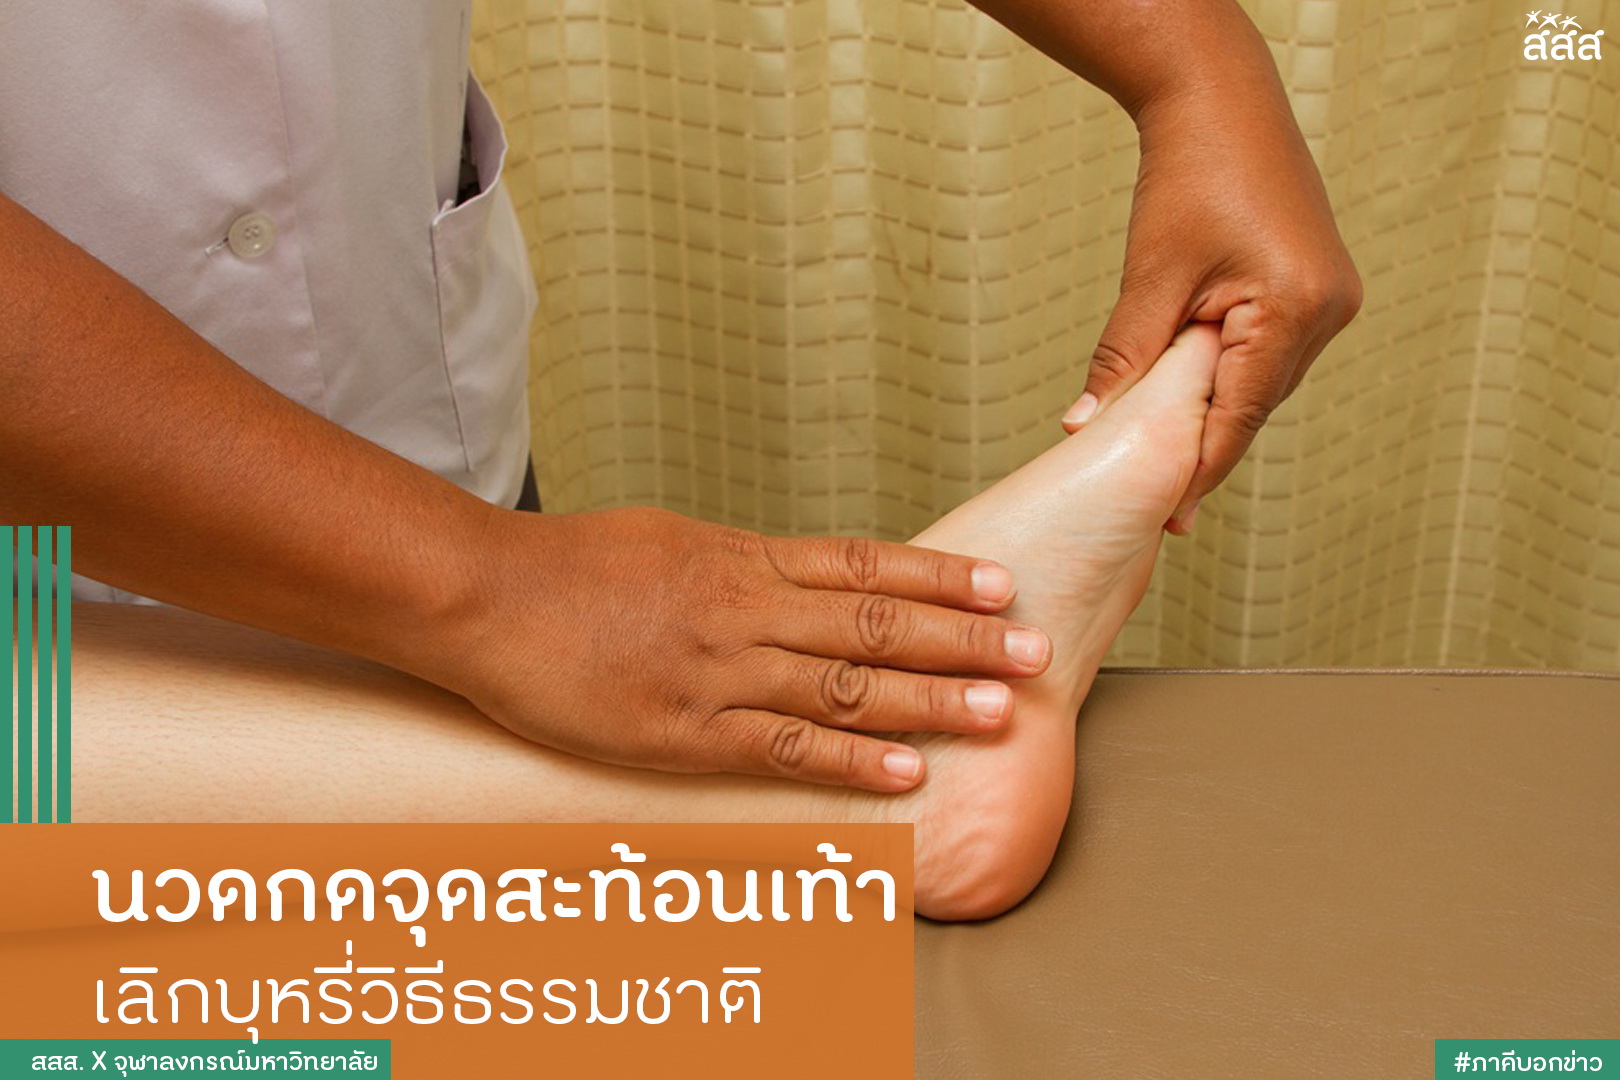 นวดกดจุดสะท้อนเท้า เลิกบุหรี่วิธีธรรมชาติ thaihealth